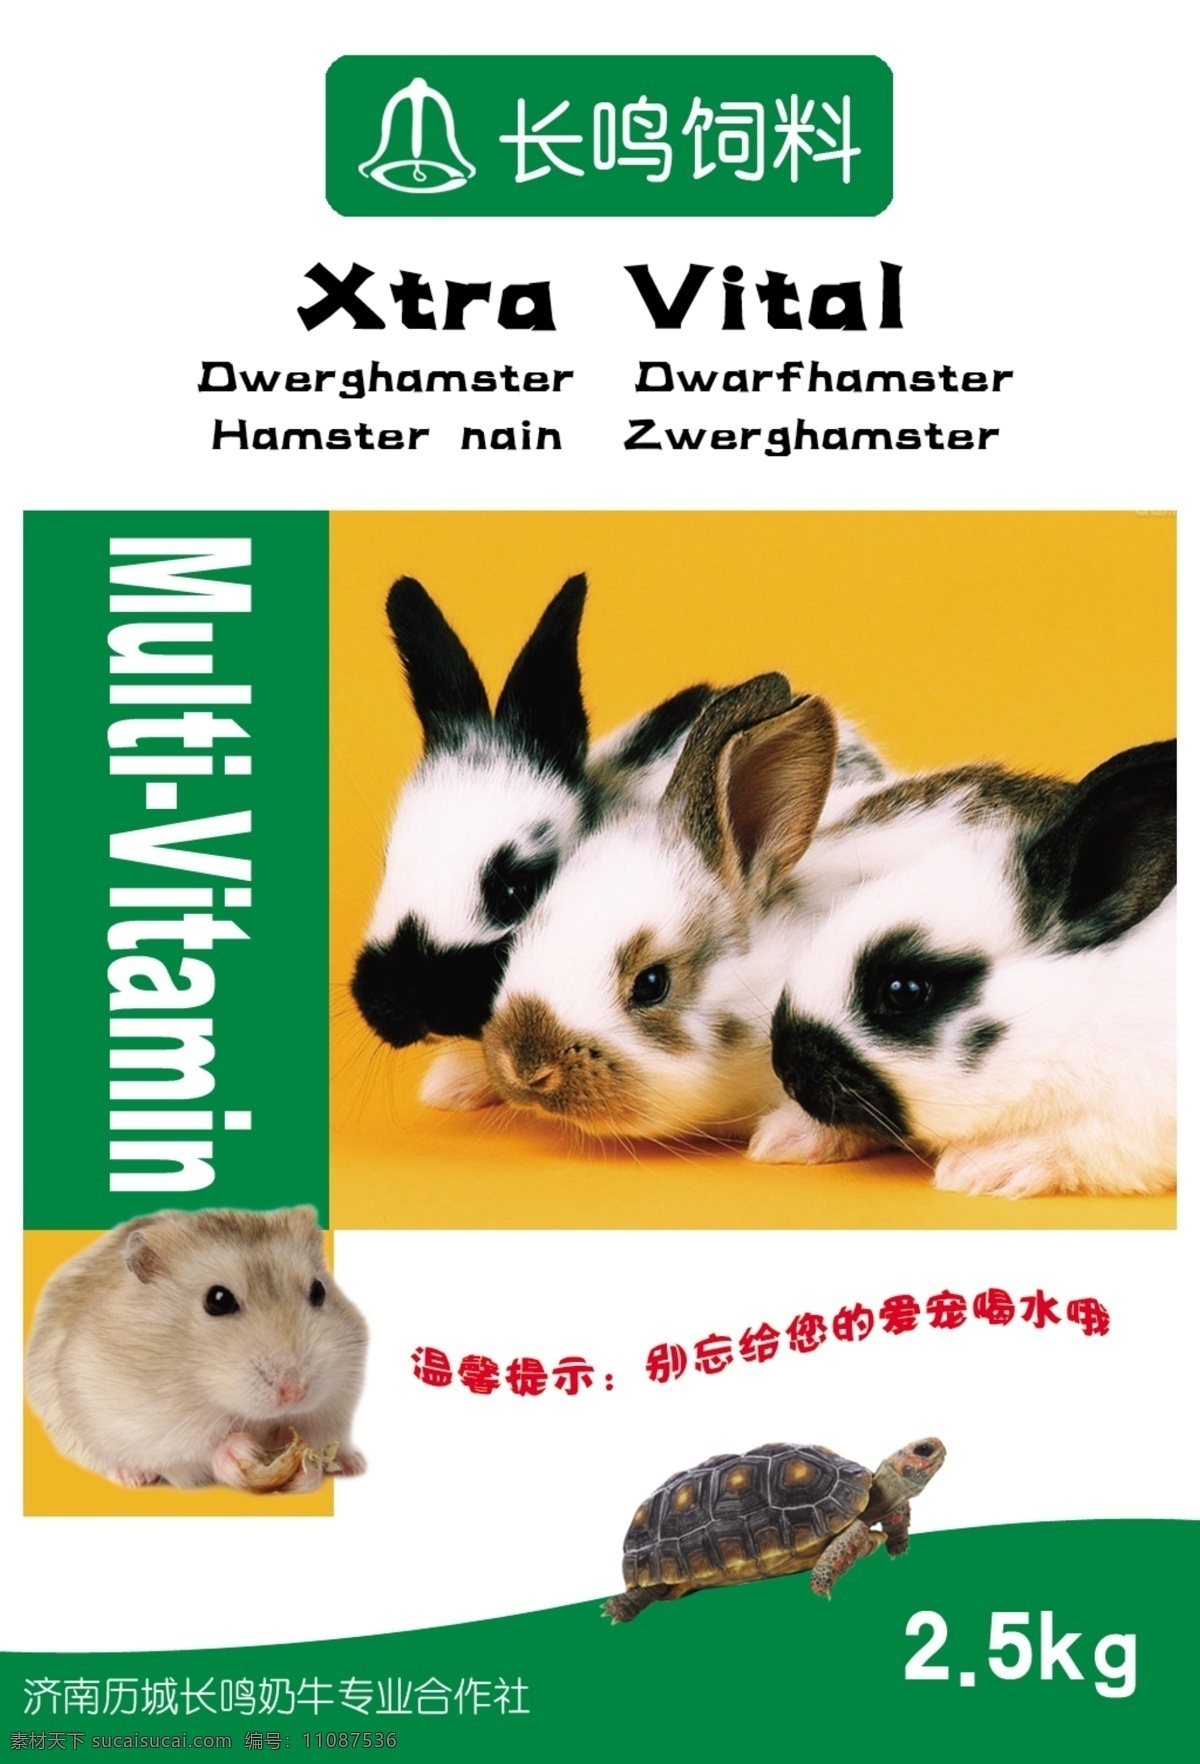 兔子 宠物 饲料 包装 仓鼠 乌龟 温馨 可爱 诱人 包装设计 广告设计模板 源文件